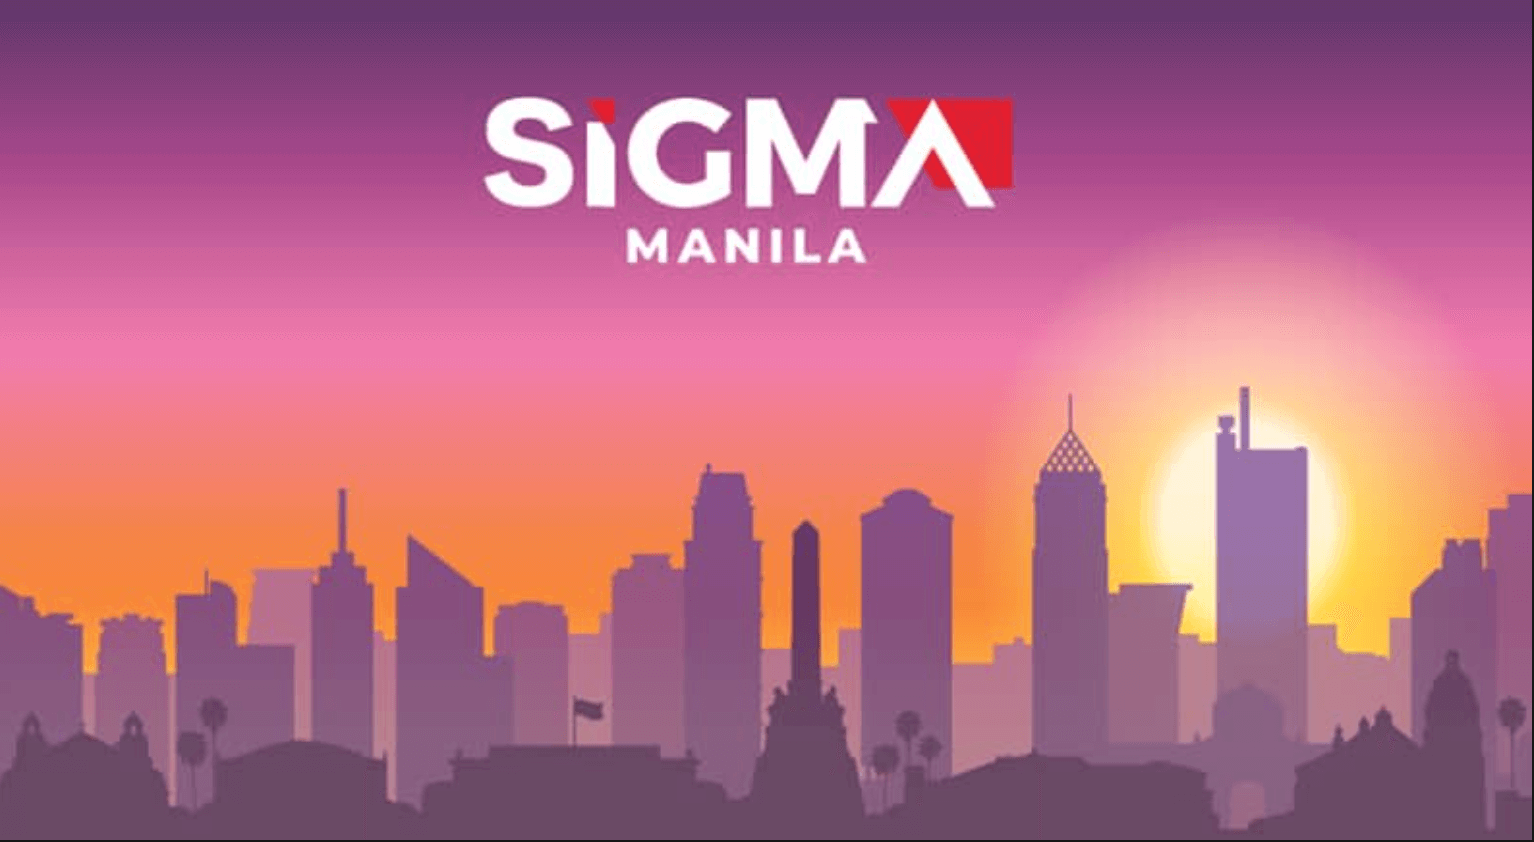 Hội chợ SiGMA Asia họp mặt 100 nhà cái tại Manila vào tháng 7